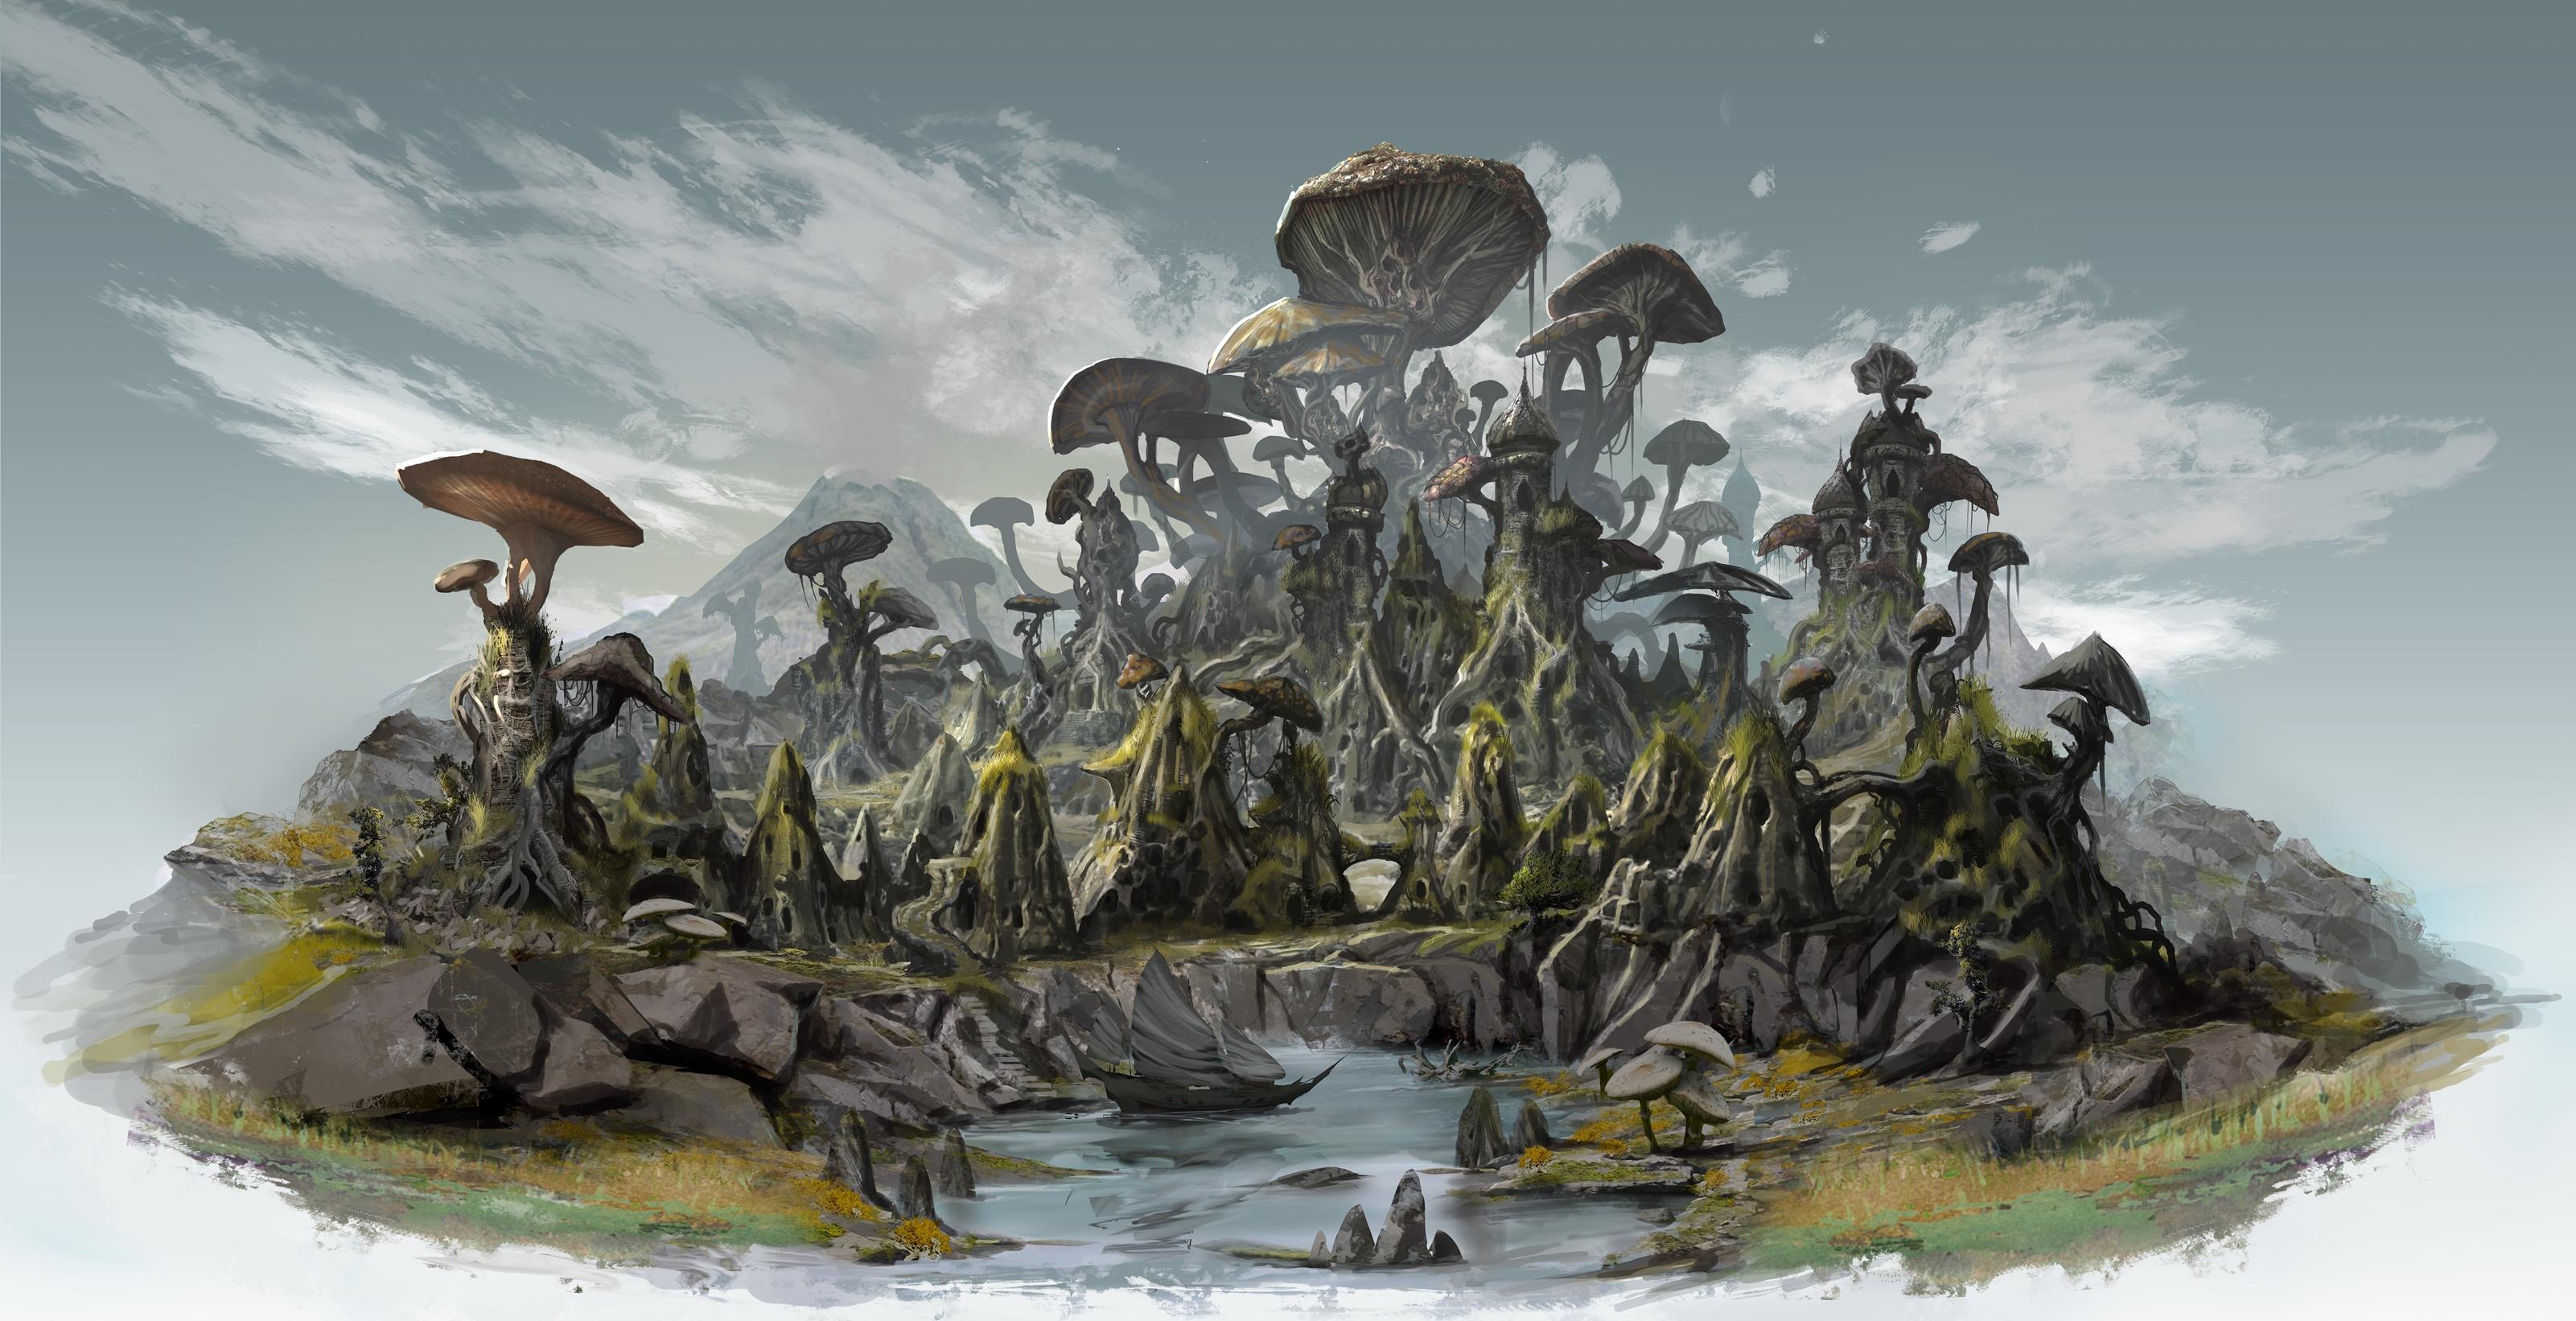 ESO-Morrowind: 20 Minuten Gameplay-Video – Von Seyda Neen nach Vivec